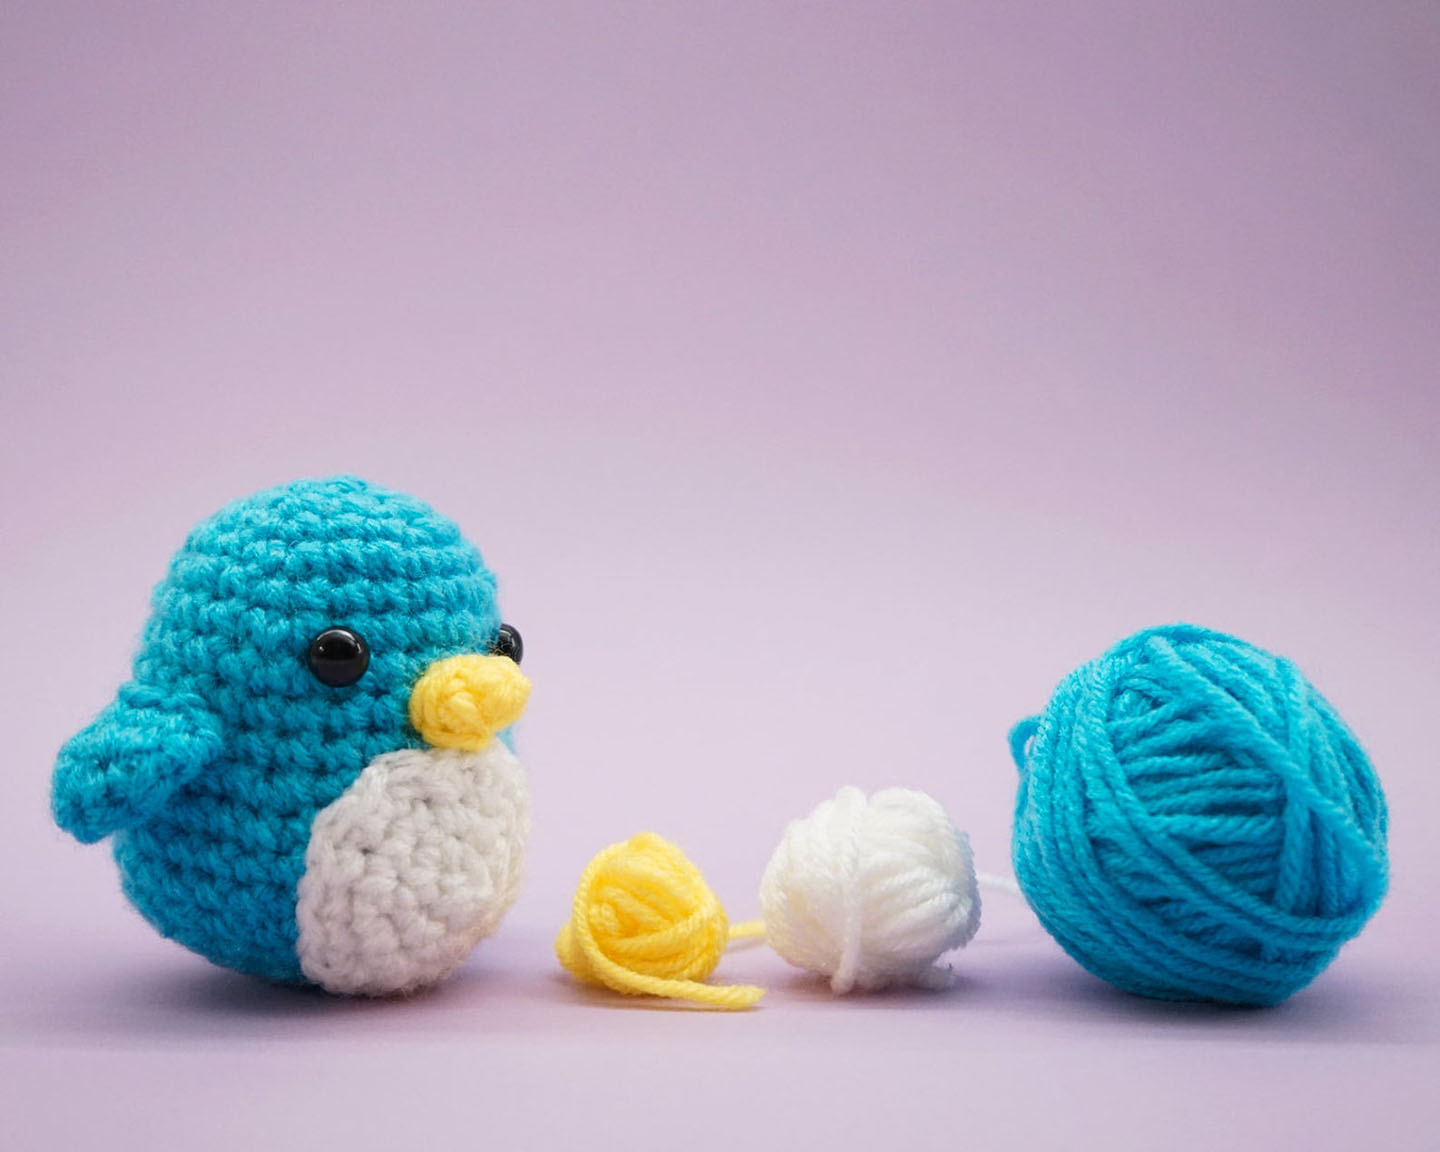 Friends Crochet by Allison Hoffman, Other Format